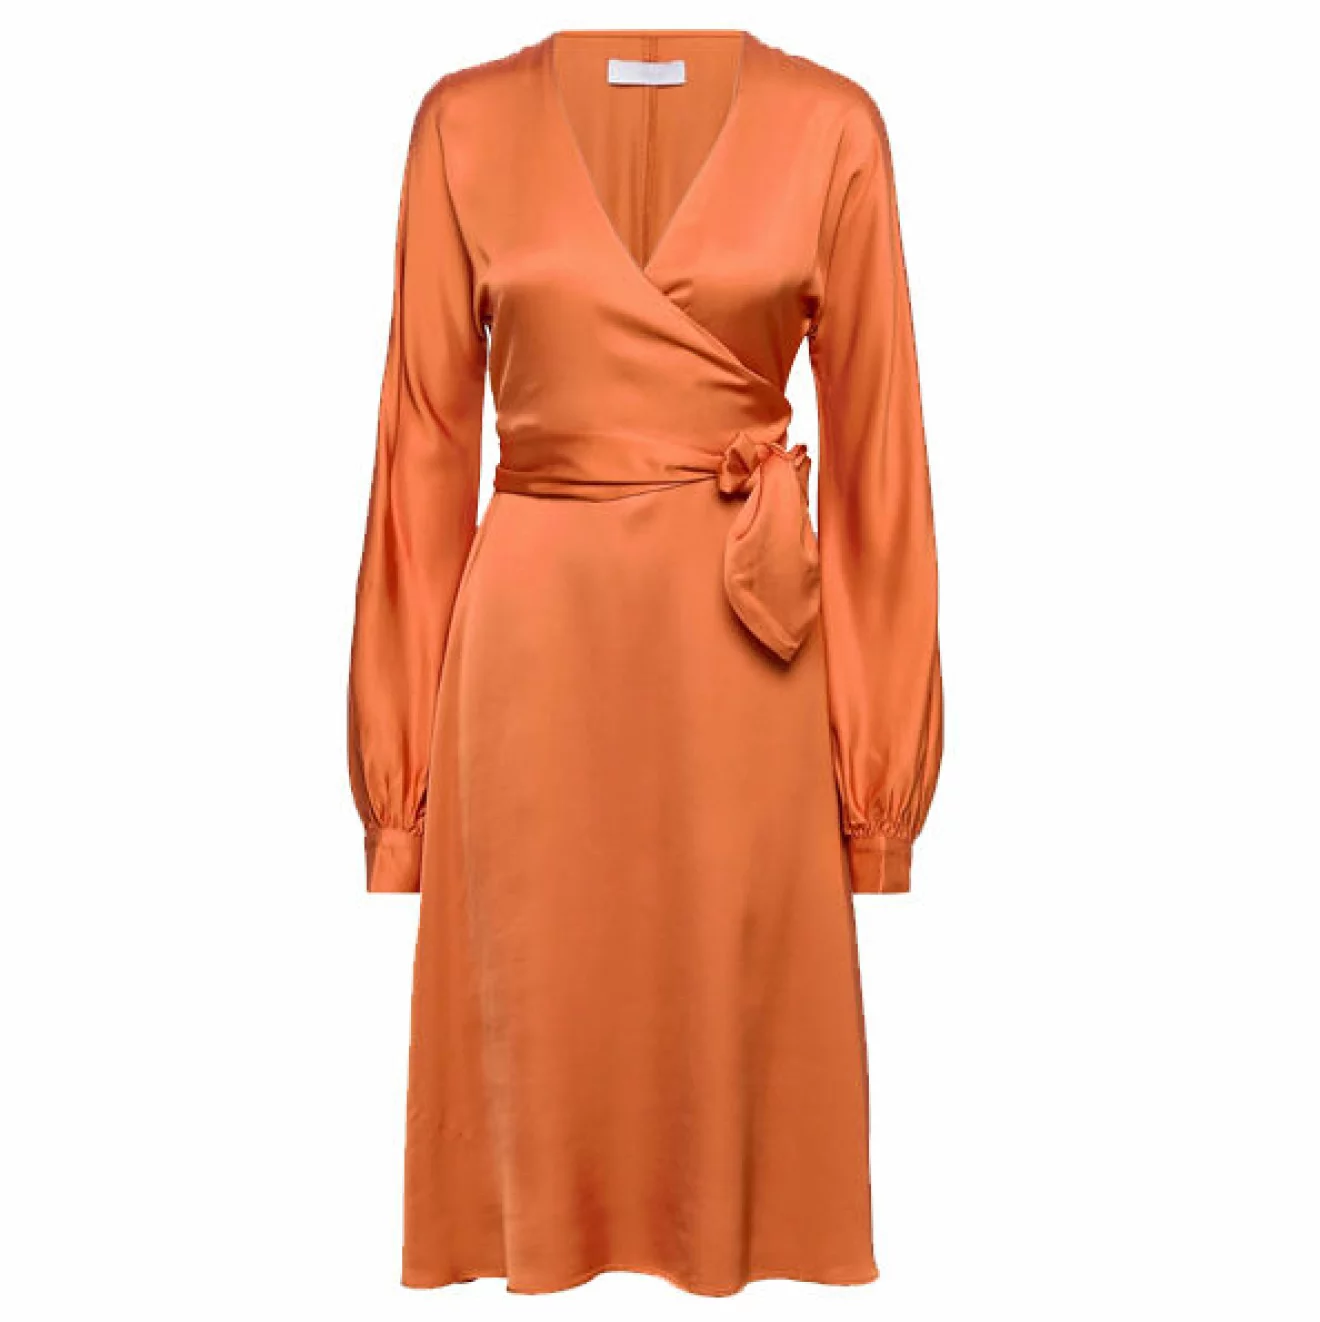 orange satinklänning inspirerat av 70-talets mode vintern 2021